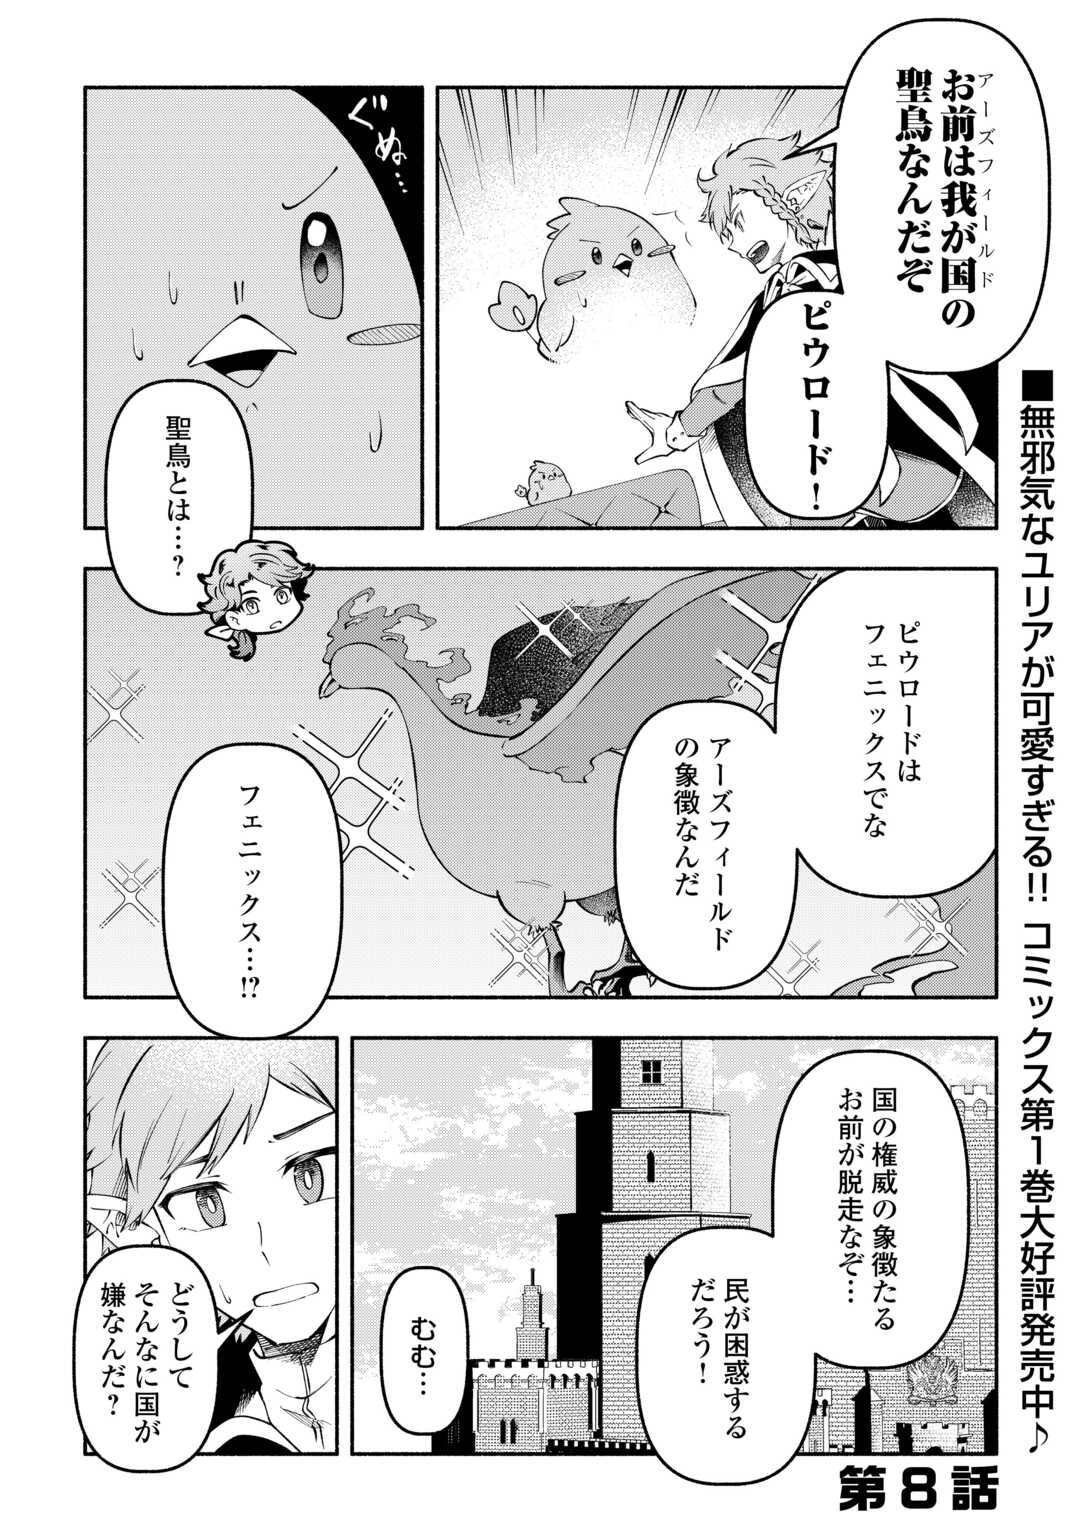 Osanago wa Saikyou no Tamer da to Kizuiteimasen! - Chapter 8 - Page 1